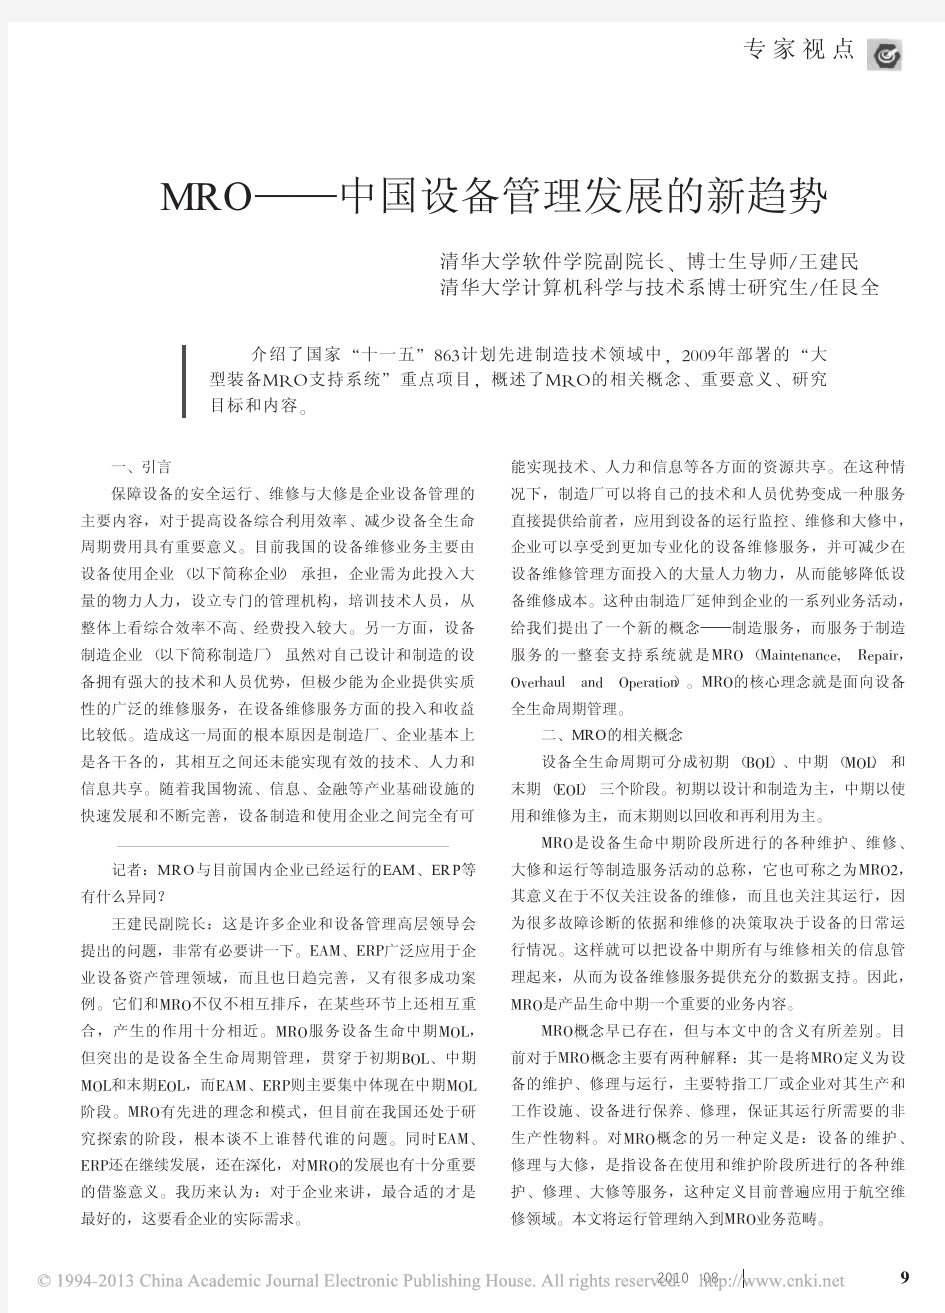 MRO_中国设备管理发展的新趋势